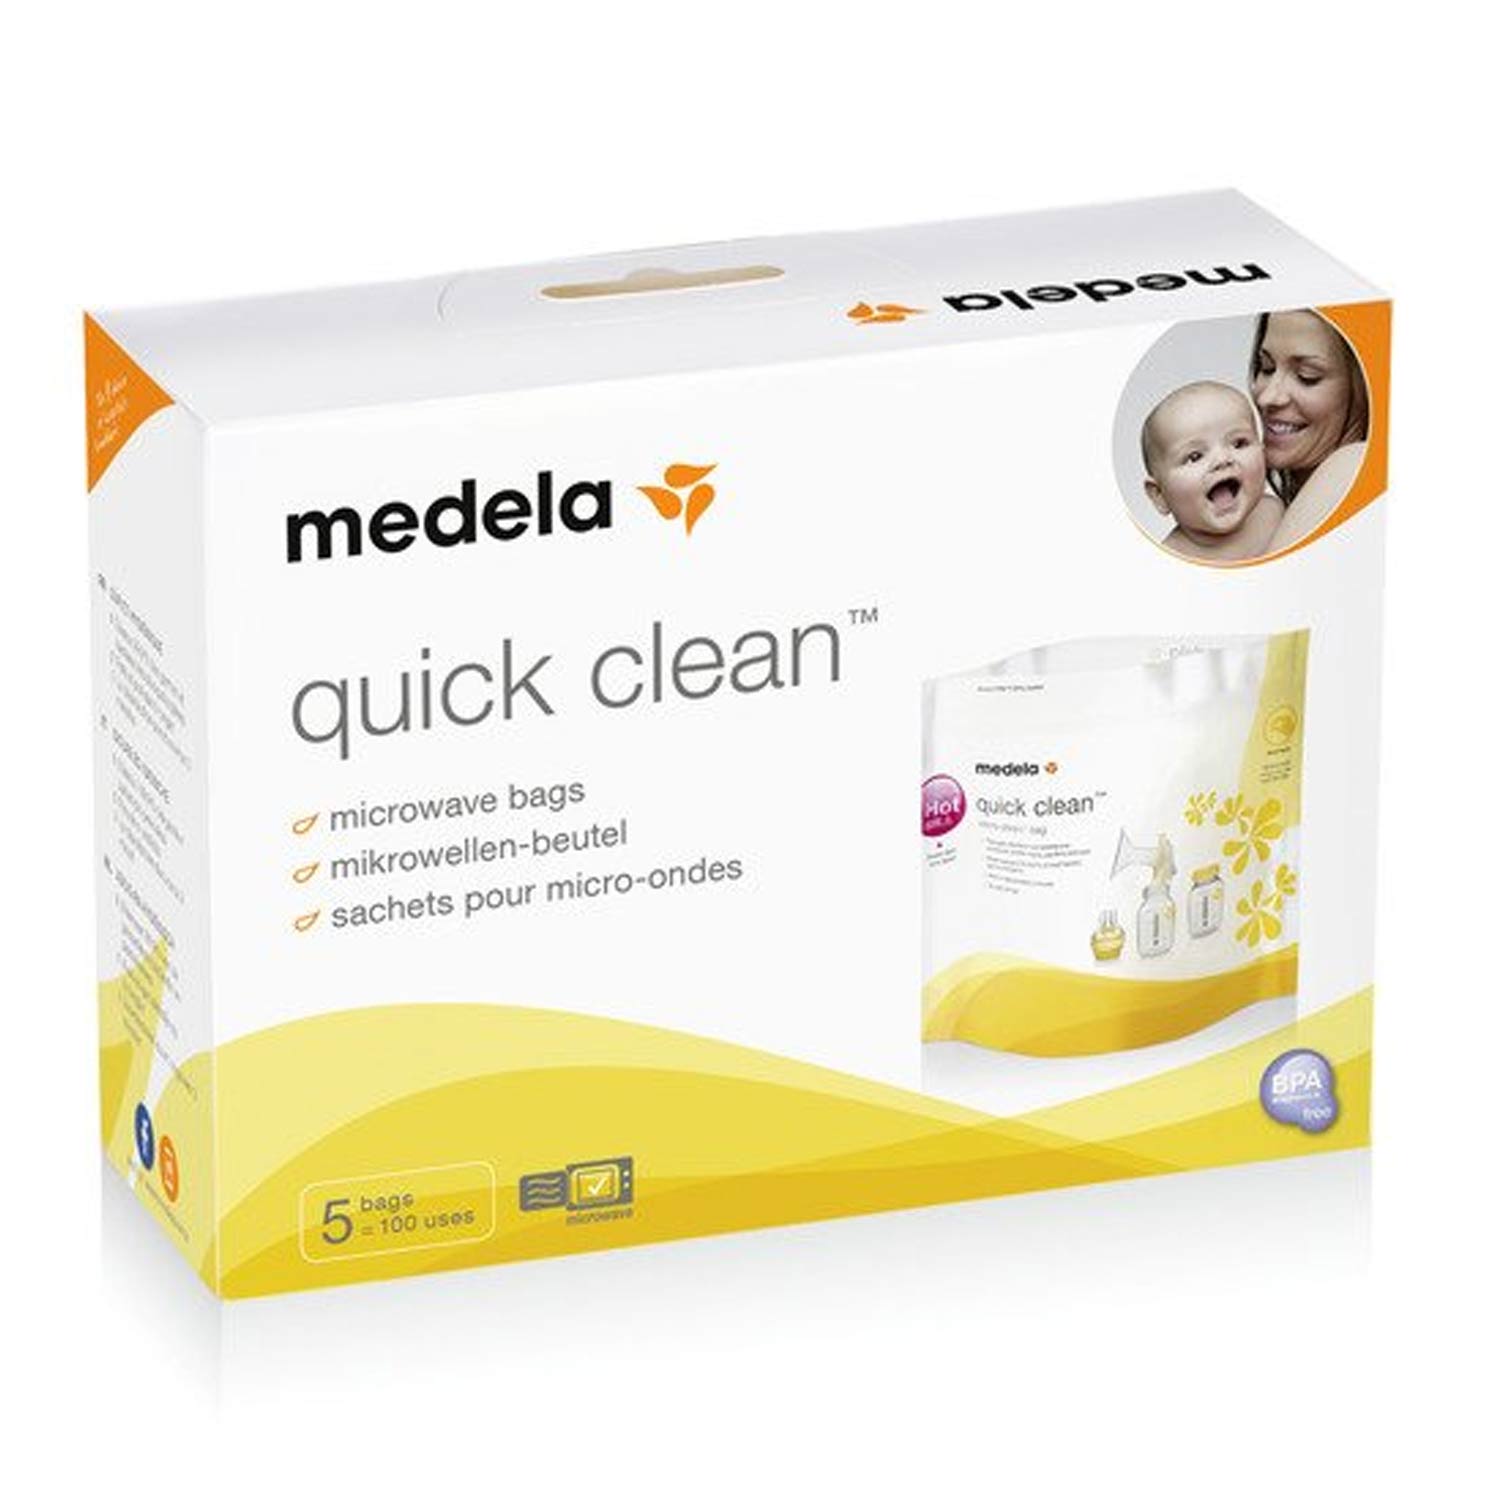 Medela Sachets Quick Clean au meilleur prix sur